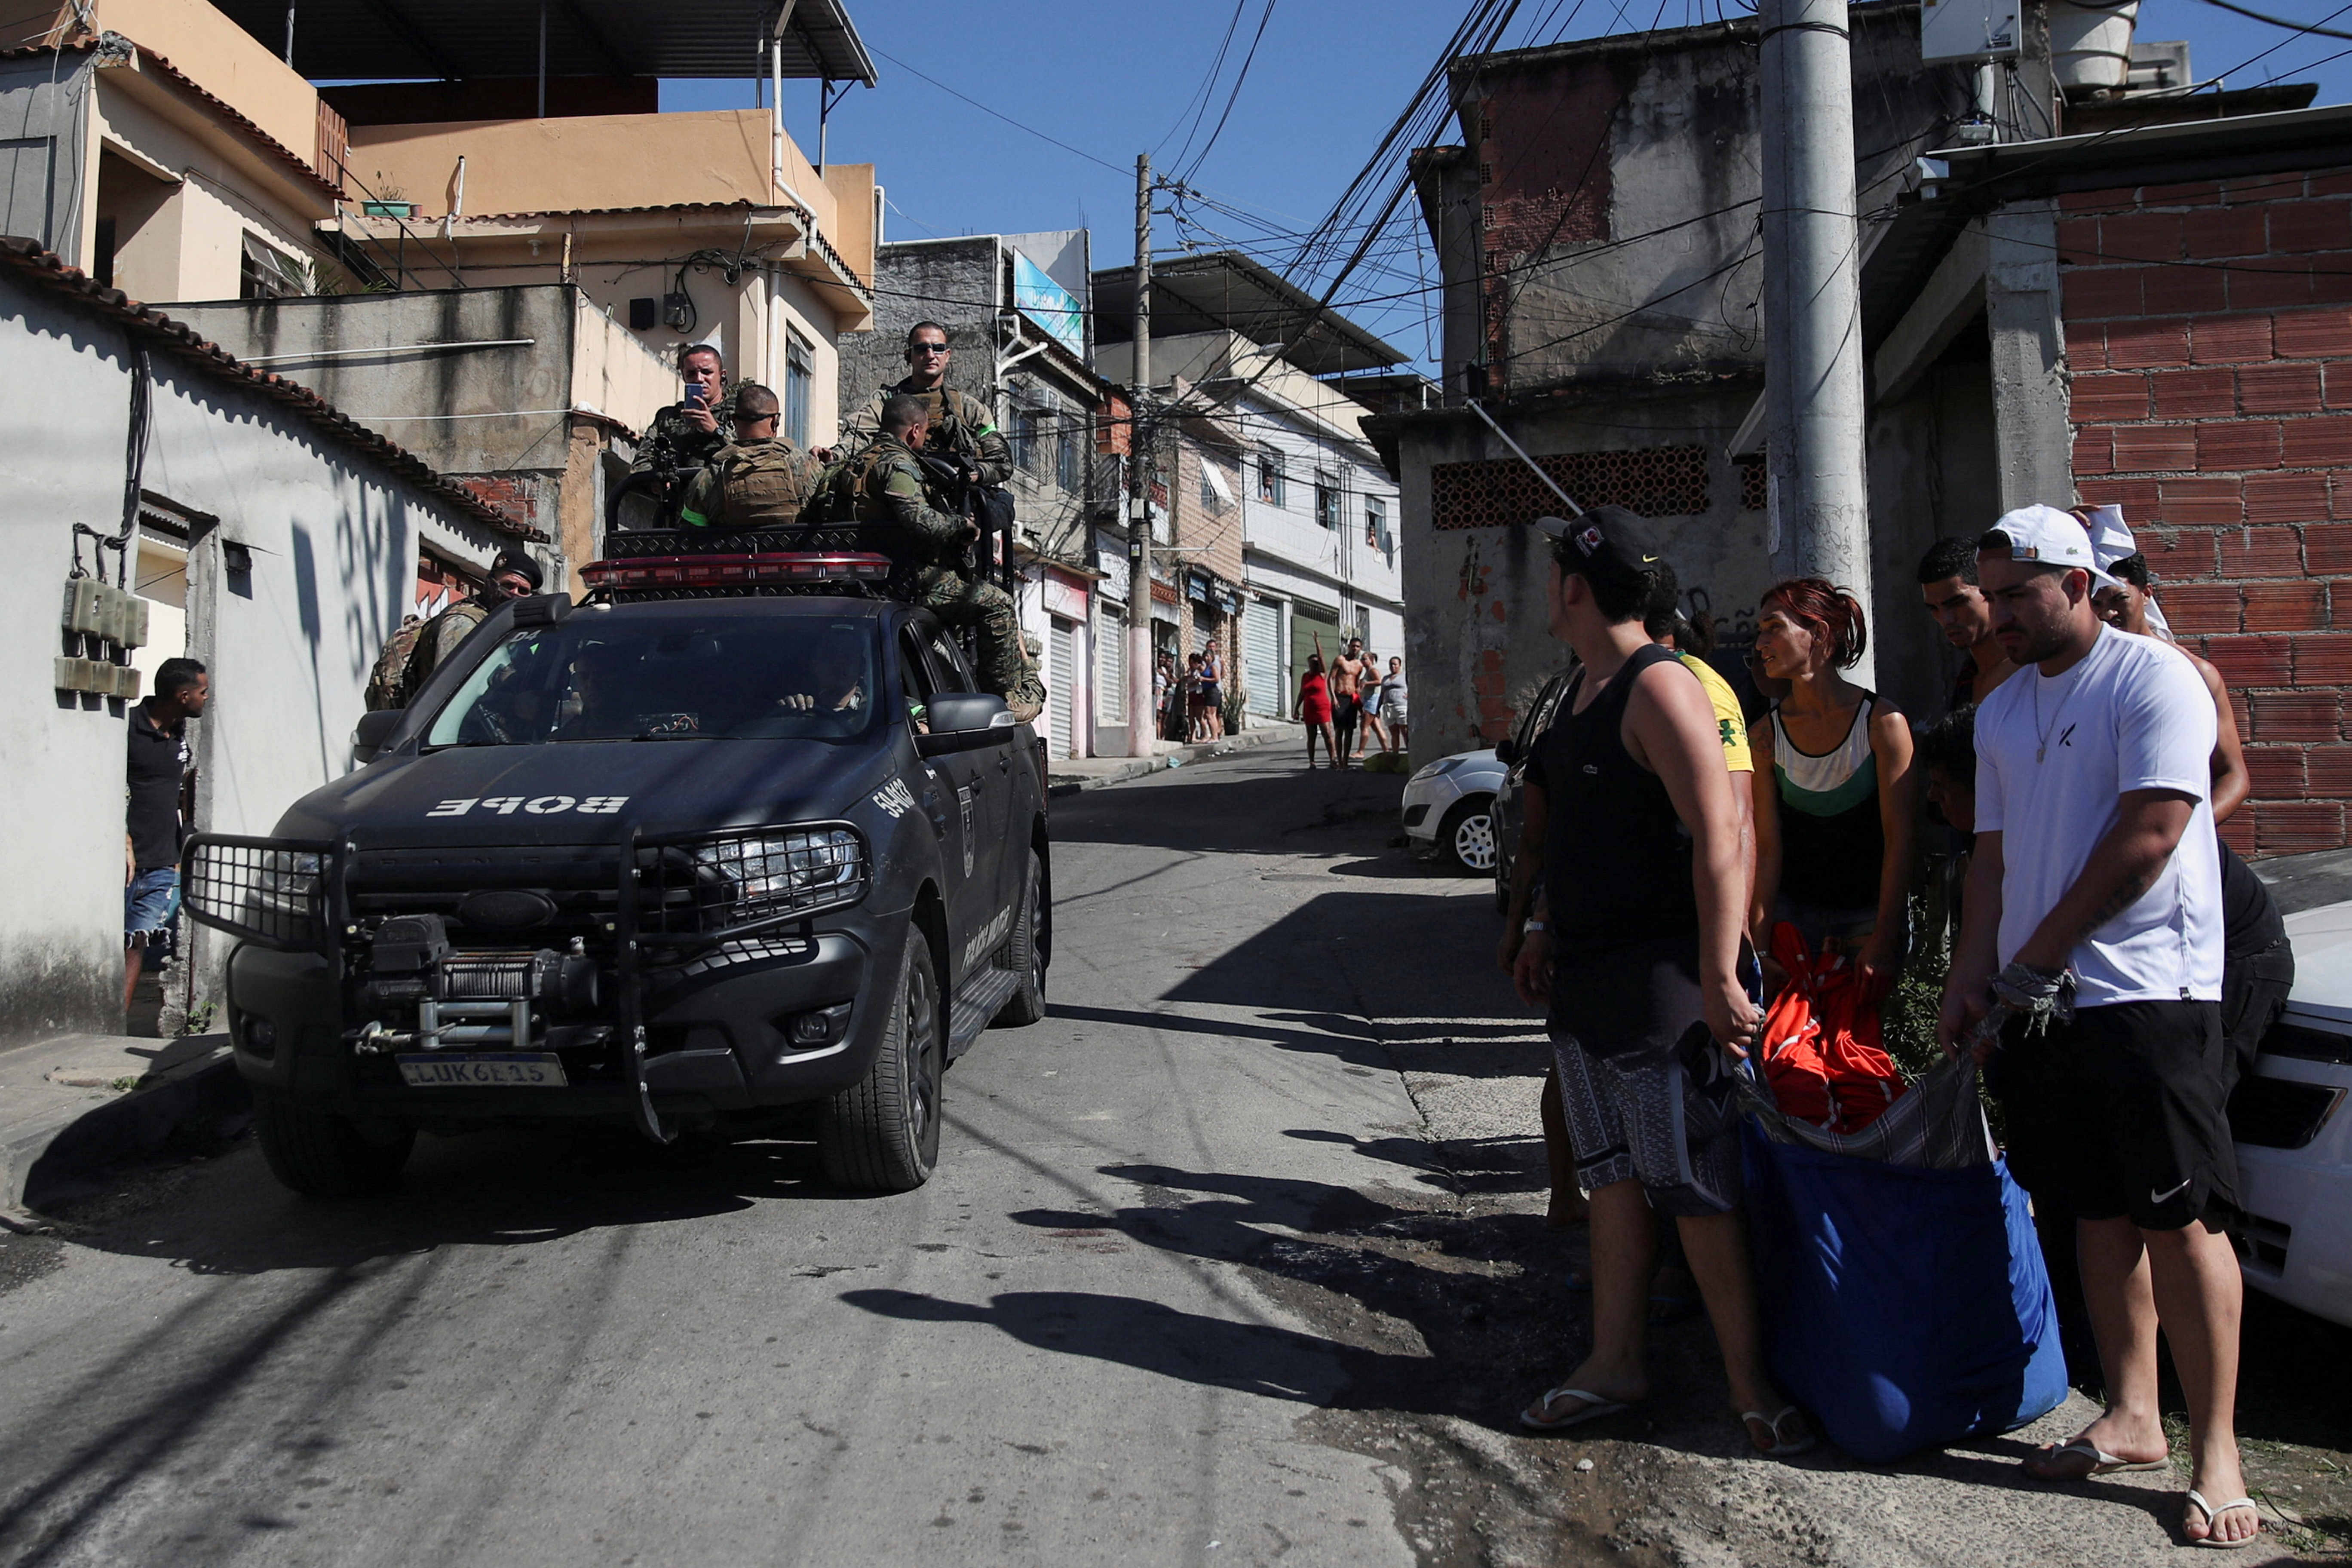 La policía patrullando las calles de la favela Alemao, tras una violenta incursión que dejó 18 muertos  (REUTERS/Ricardo Moraes)